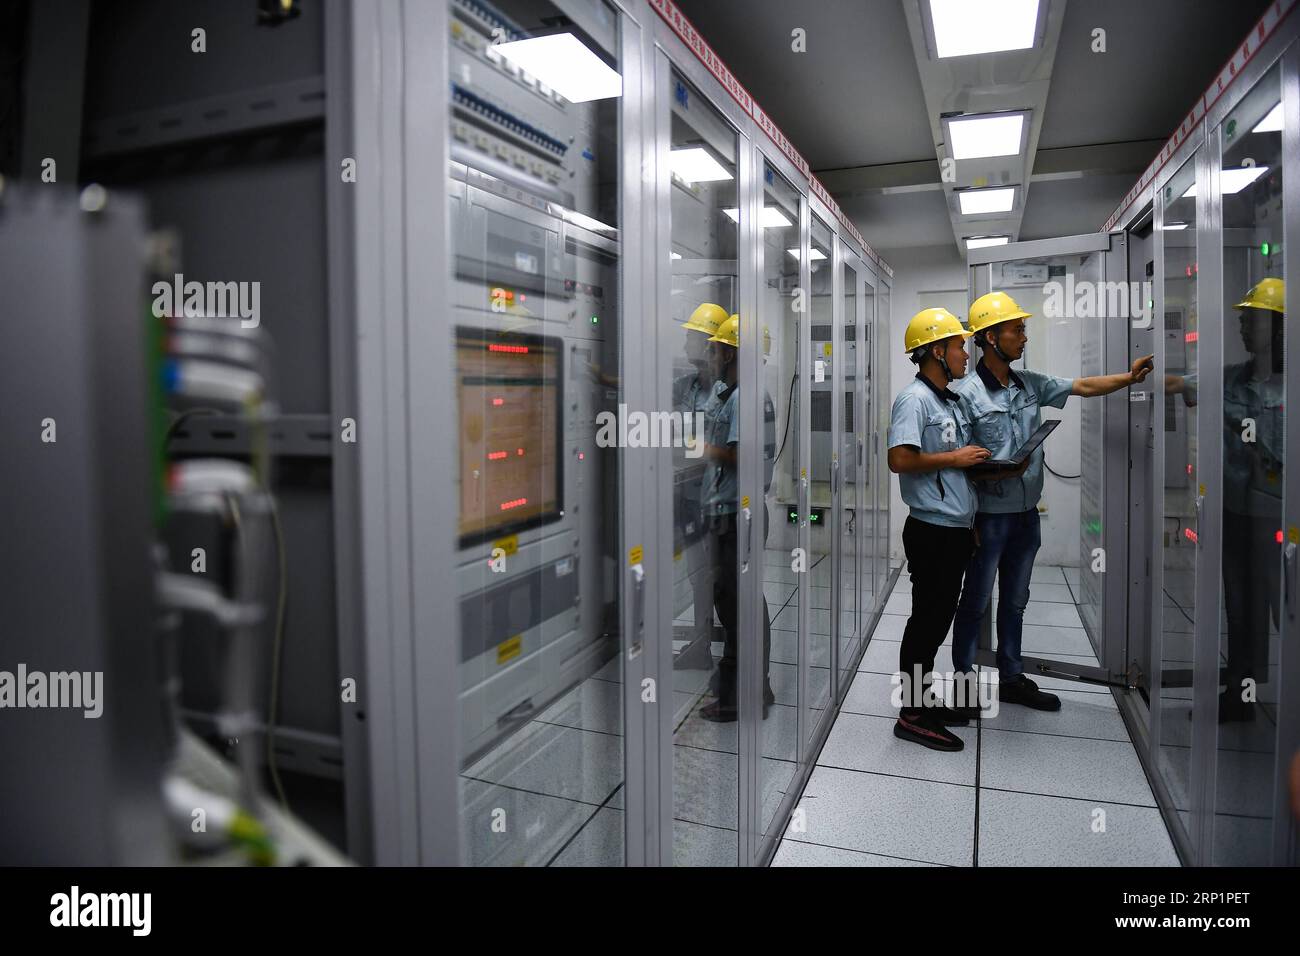 (180719) --ZHENJIANG, 19. Juli 2018 (Xinhua) -- Ingenieure debuggen Ausrüstung in einer intelligenten Steuerkabine eines Batteriespeicherkraftwerks in der Stadt Zhenjiang, ostchinesische Provinz Jiangsu, 18. Juli 2018. Am Mittwoch wurde ein Batteriespeicherkraftwerk mit 100 MW Leistung und 200 MWh Kapazität in Betrieb genommen, das nach Angaben des Anlagenbetreibers Jiangsu Electric Power Company of the State Grid das mit Abstand größte Stromkraftwerk der Welt ist. (Xinhua/Li Xiang) (hxy) CHINA-ZHENJIANG-AKKU-KRAFTWERKSBETRIEB (CN) PUBLICATIONxNOTxINxCHN Stockfoto